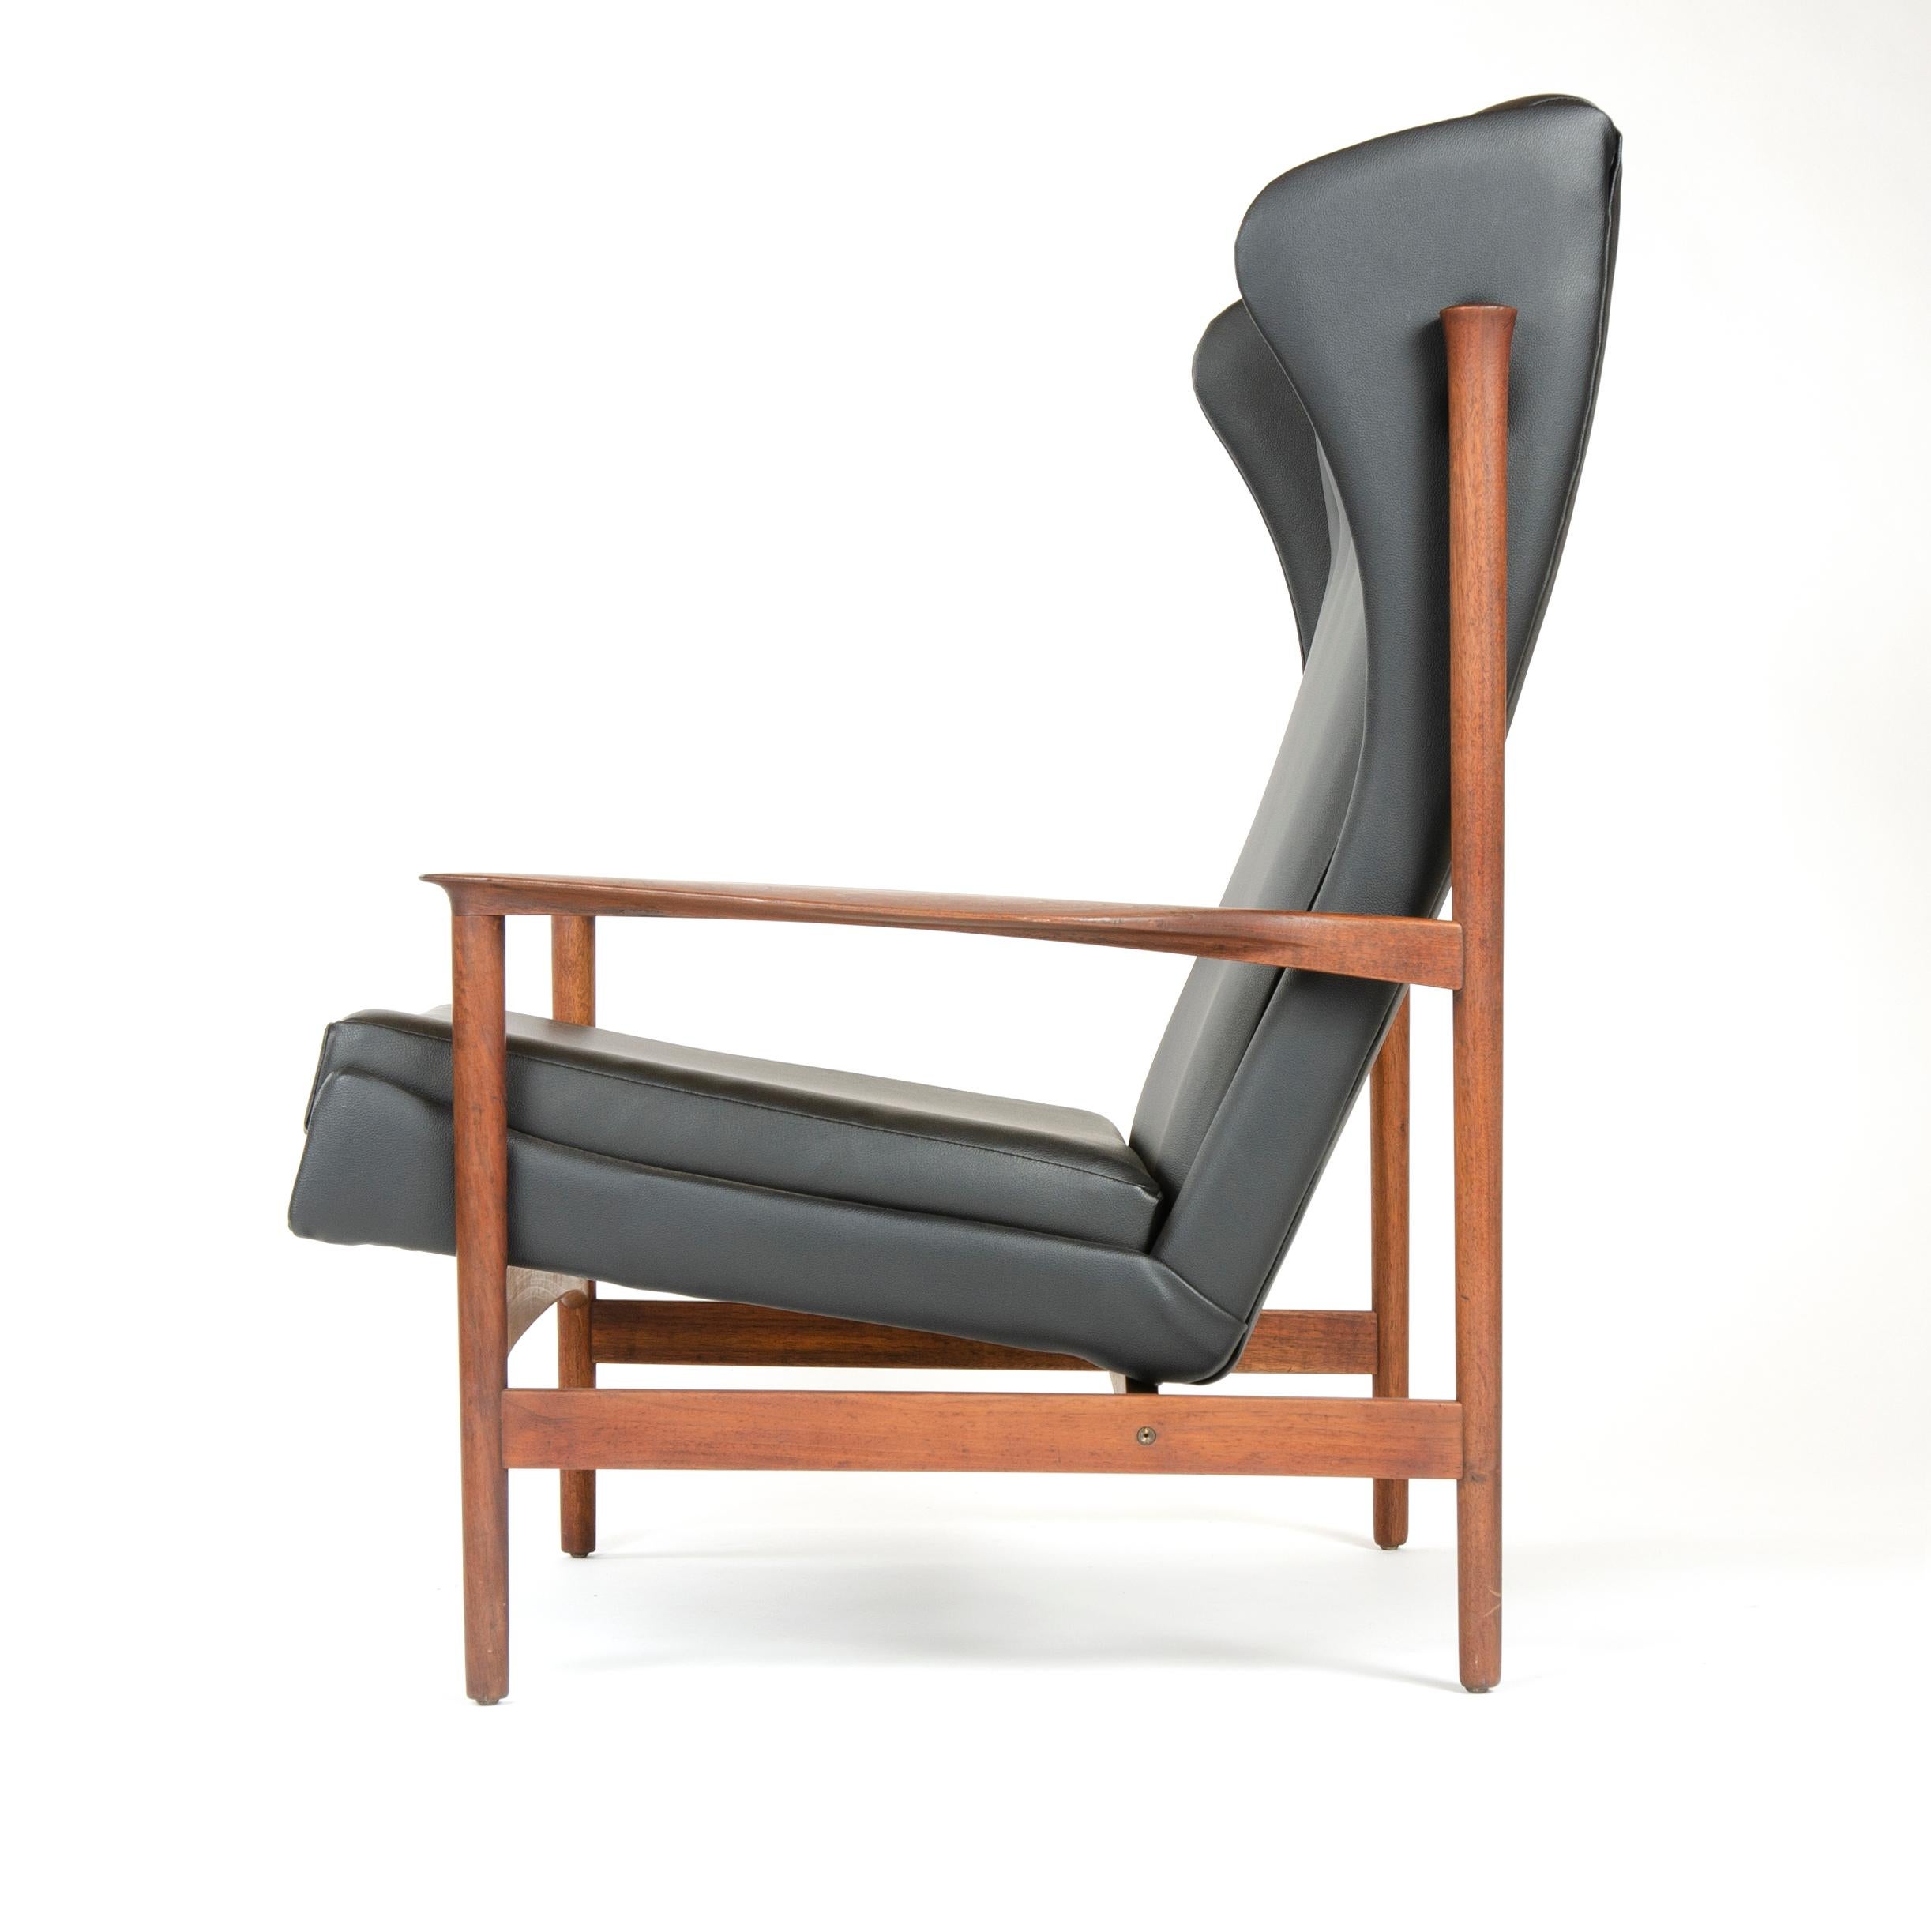 Un fauteuil de salon en cuir noir avec un dos ailé touffeté, ayant un cadre exposé finement joint soutenant un siège sculptural flottant.